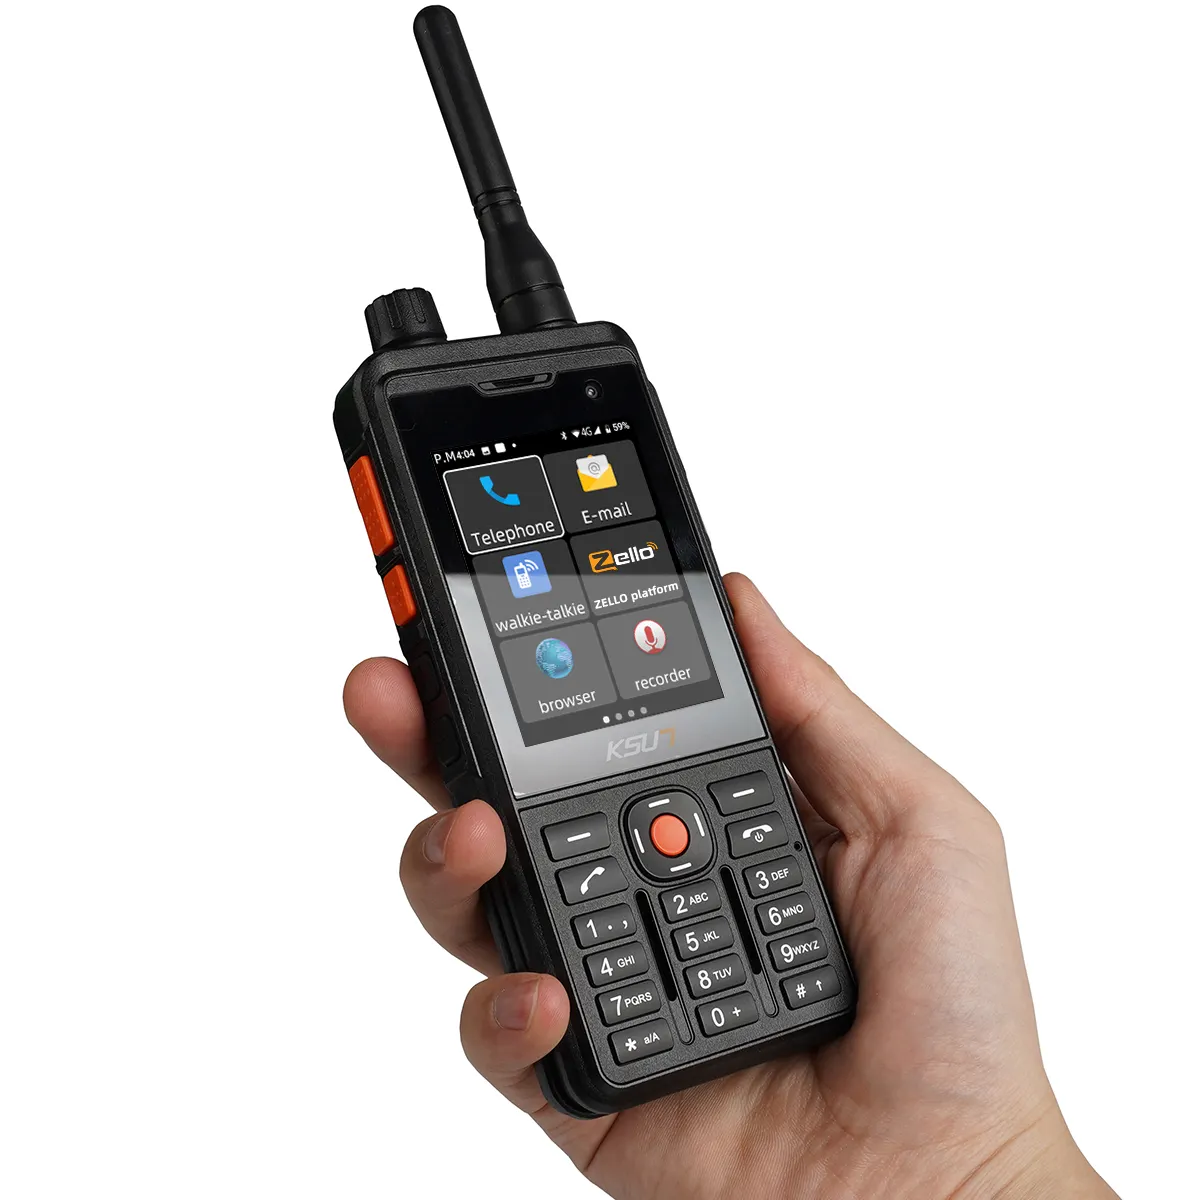 جهاز اتصال لاسلكي KSUN KSXAL1 Zello, جهاز اتصال لاسلكي KSUN KSXAL1 Zello 4G WCDMA CDMA GSM تحديد المواقع GPS تحديد المواقع GPS تحديد المواقع بطاقة Sim هاتف محمول راديو ذا اتجاهين